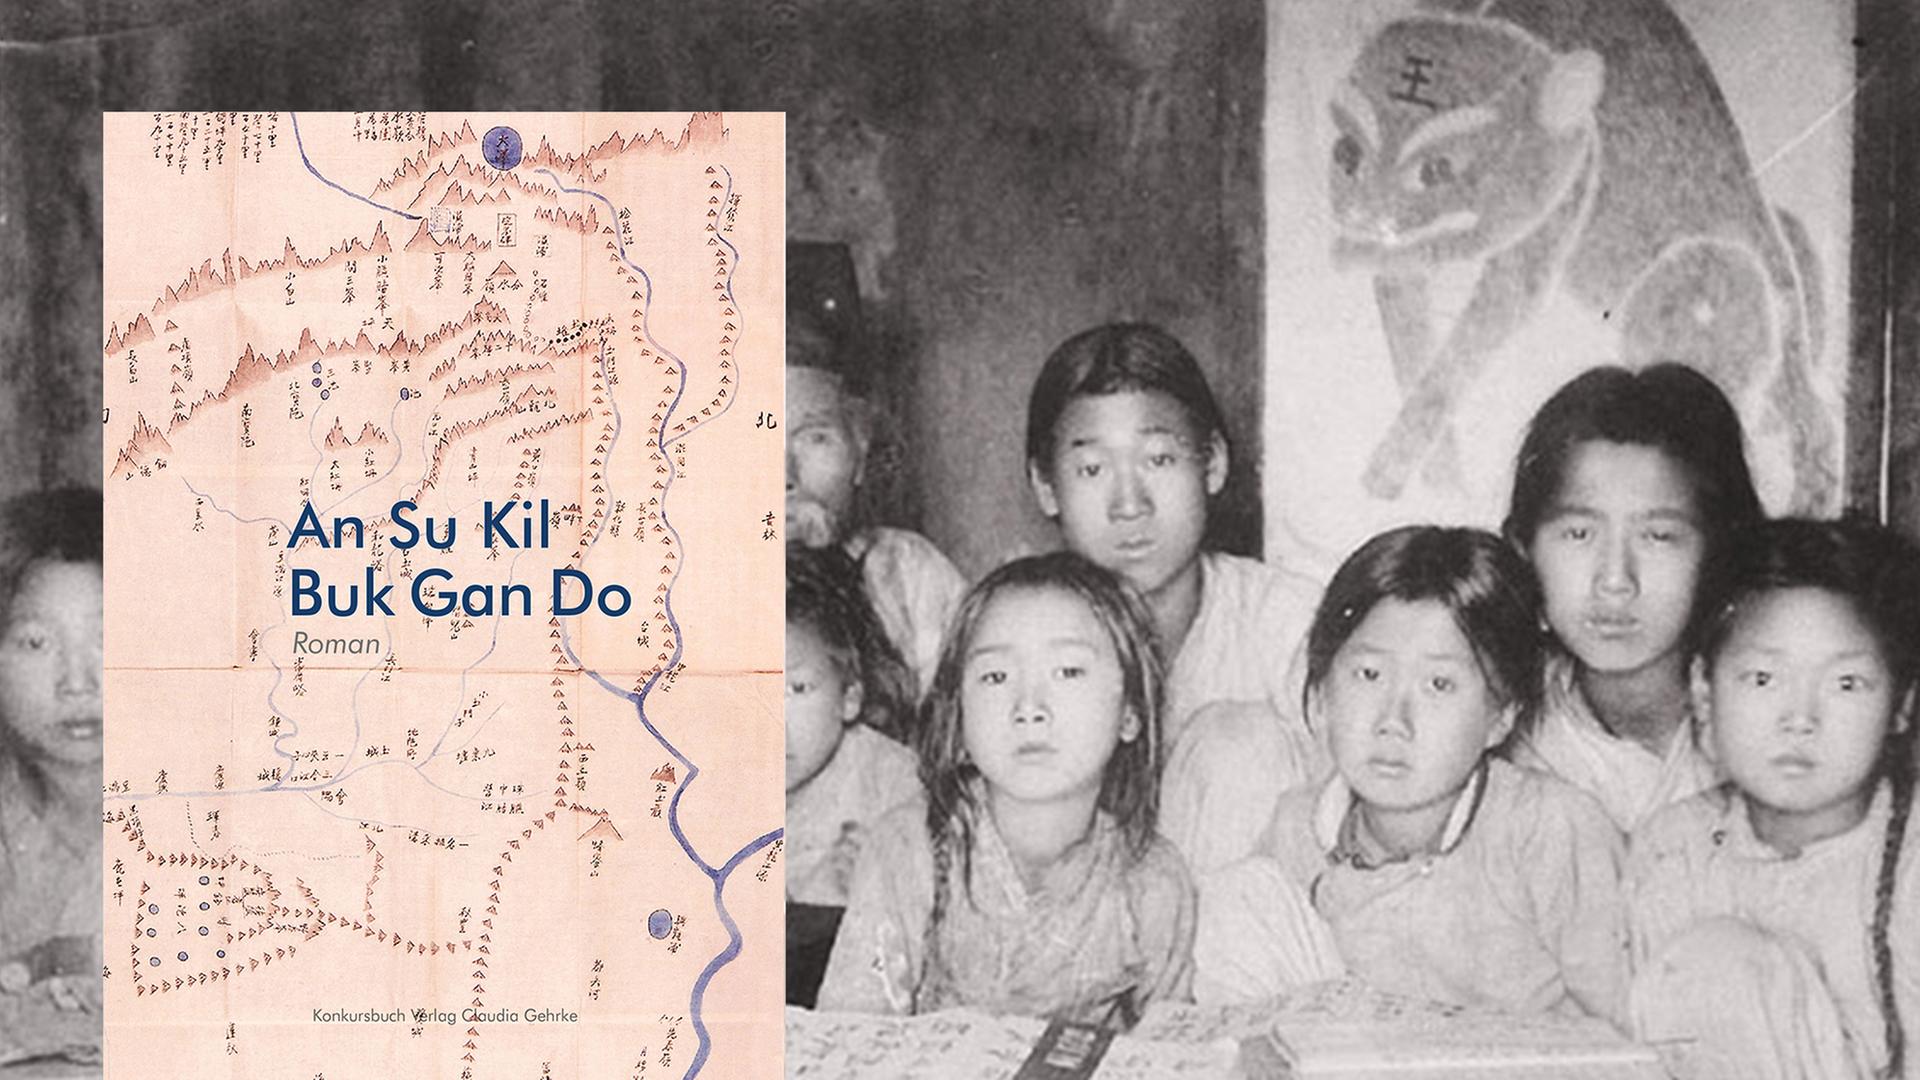 Im Vordergrund ist das Buchcover "Buk Gan Do". Das Bild im Hintergrund zeigt, eine historische Aufnahme von Schulmädchen in einem Klassenzimmer in der Mandschurai.